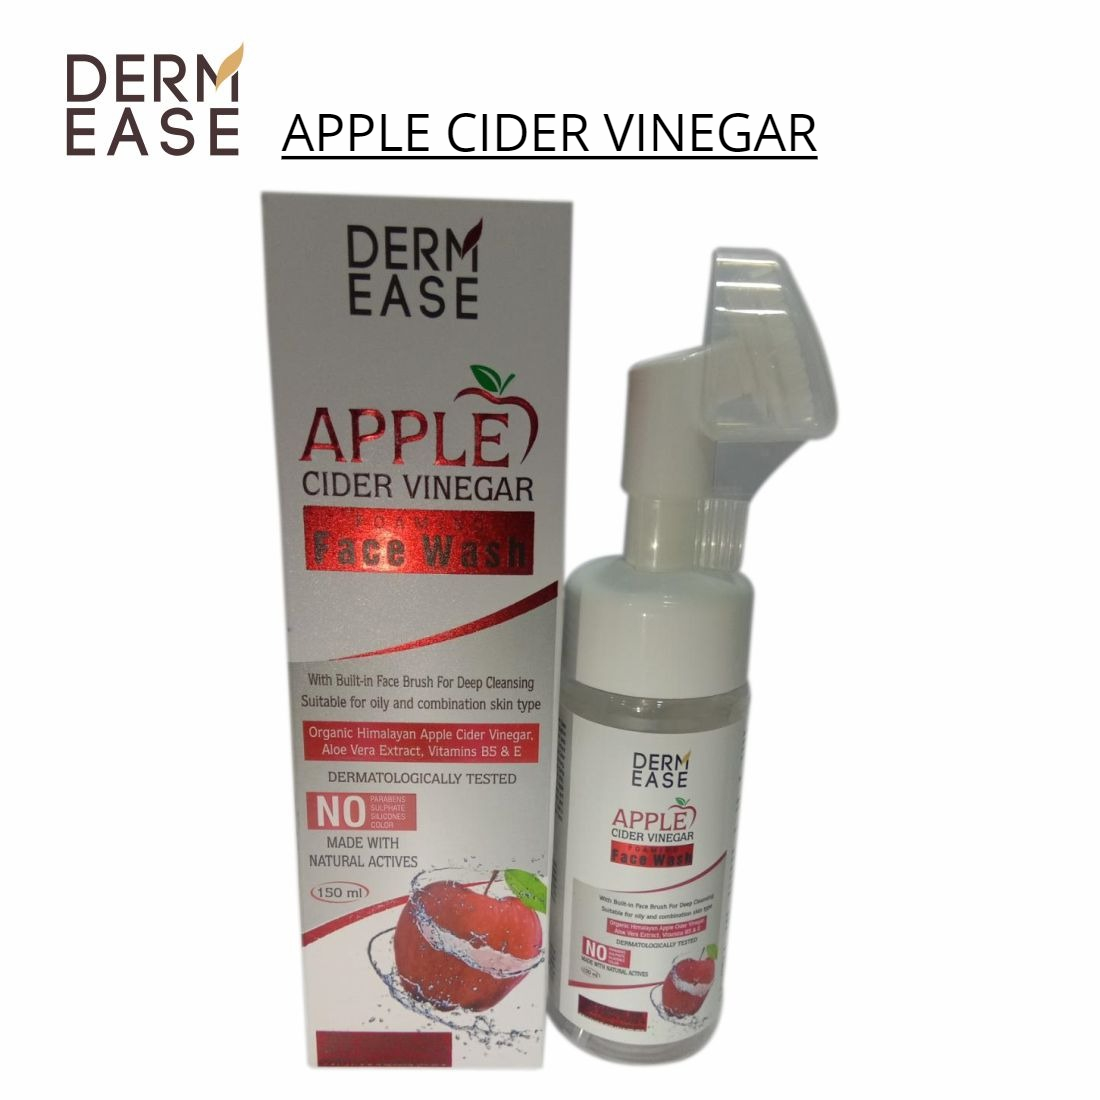 DERM EASE Apple Cider Vinegar Foaming Face Wash